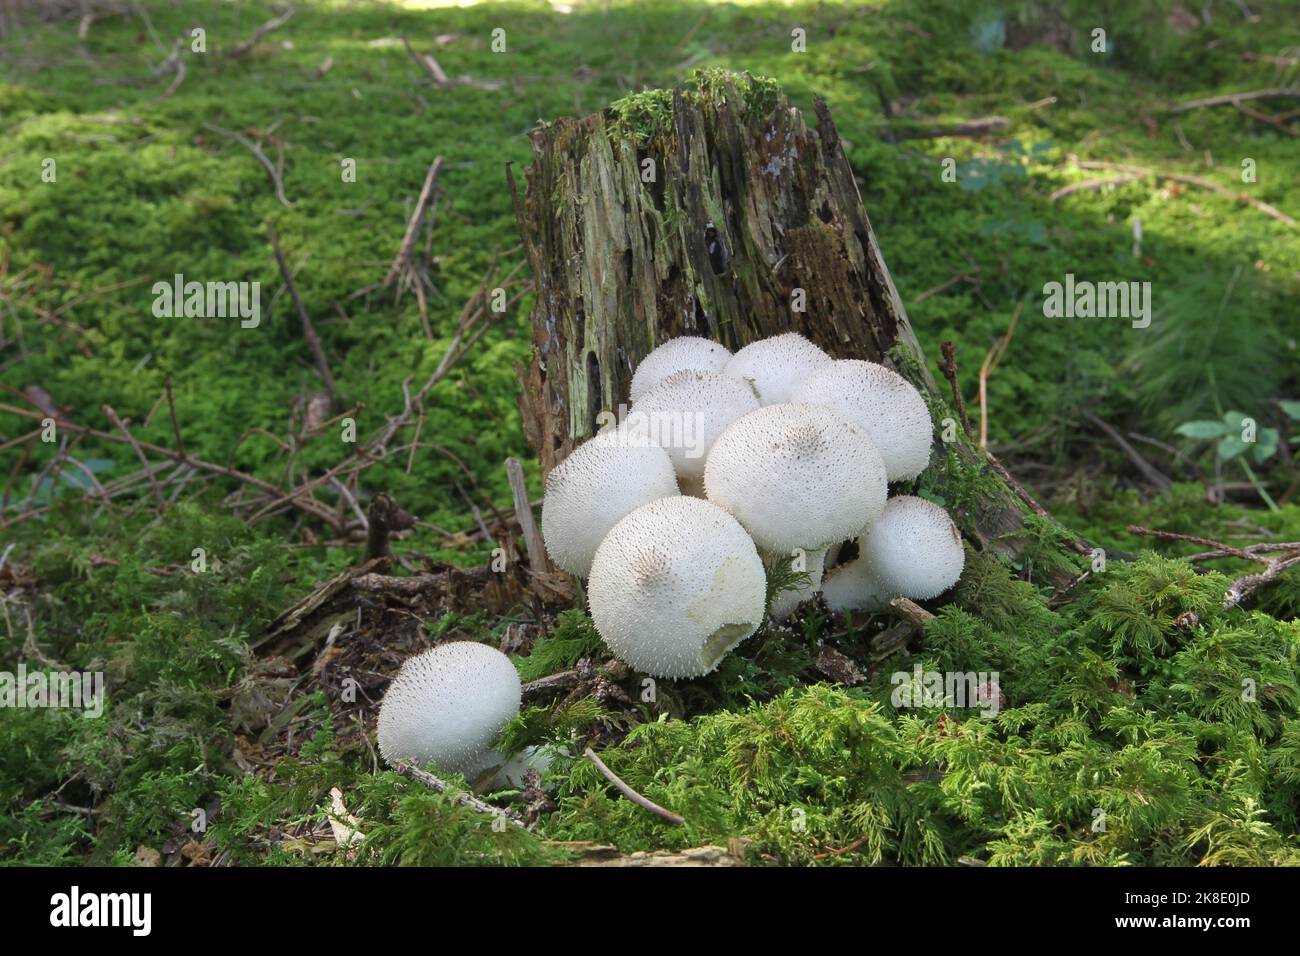 Pilze, birnenförmiger Kugelkopf (Apioperdon pyriforme), der auf alten Baumstümpfen wächst, Allgäu, Bayern, Deutschland Stockfoto